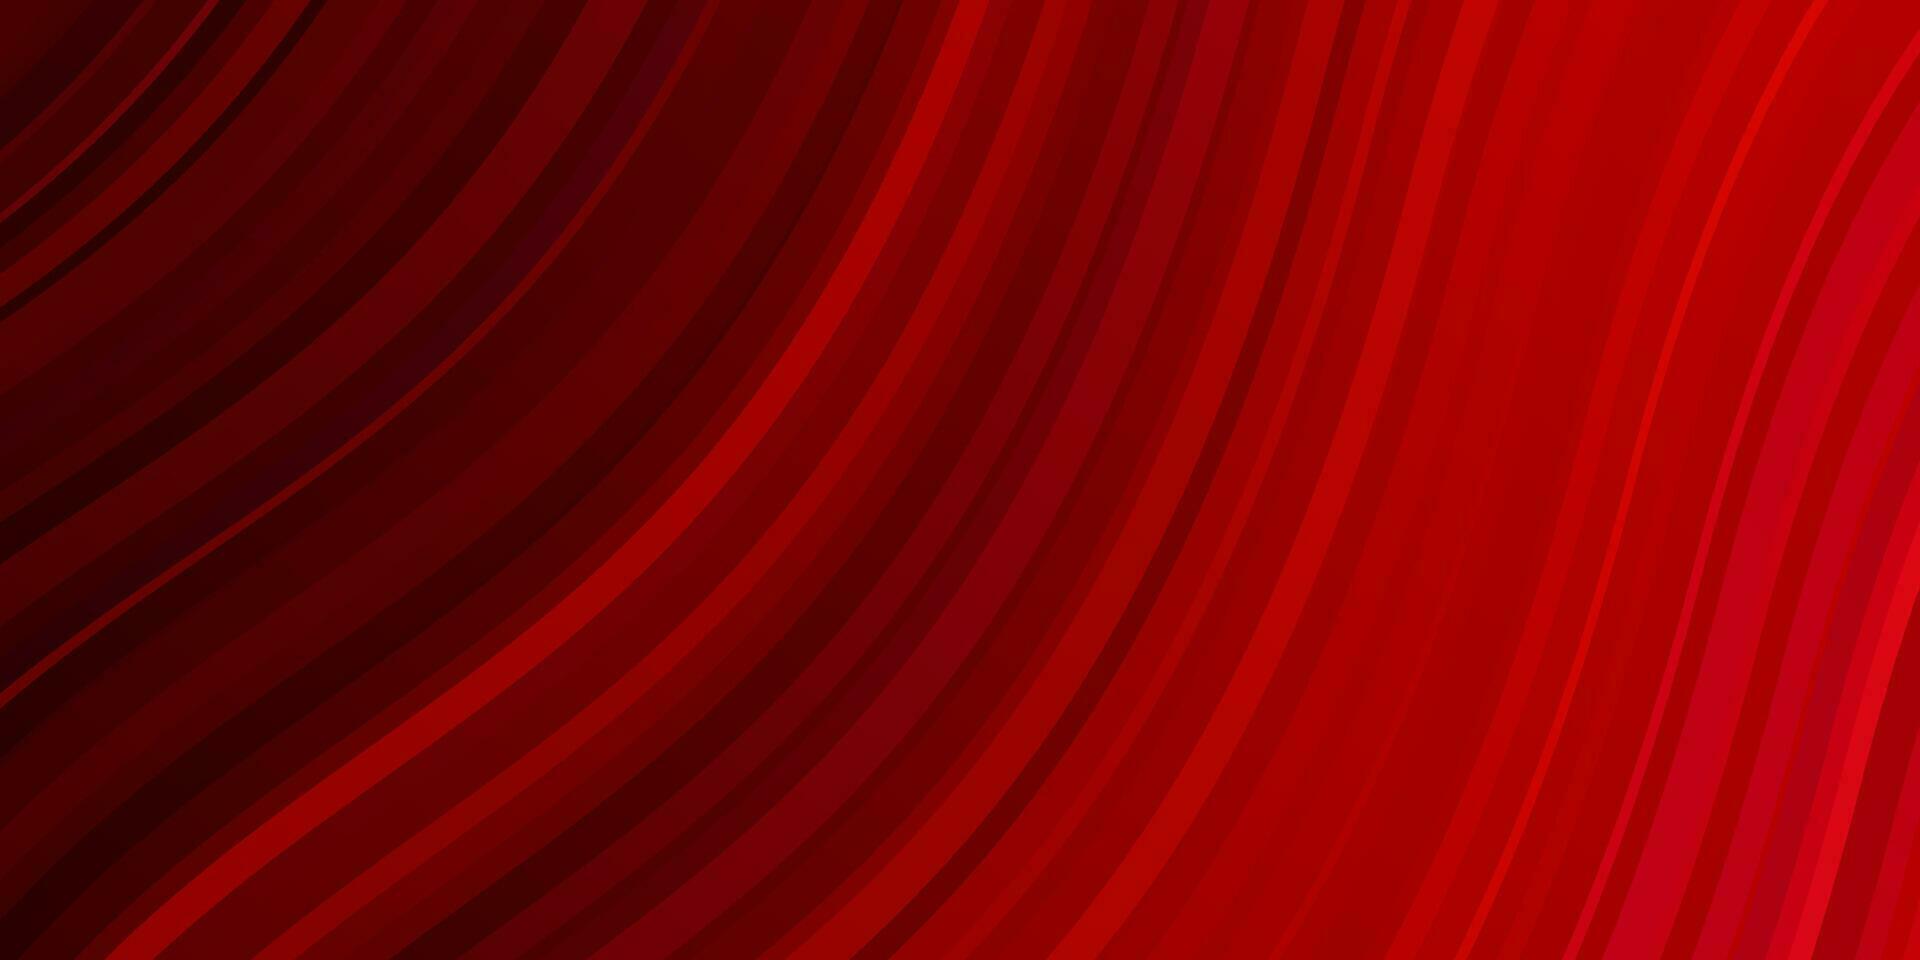 ljusrosa, röd vektorstruktur med kurvor. vektor